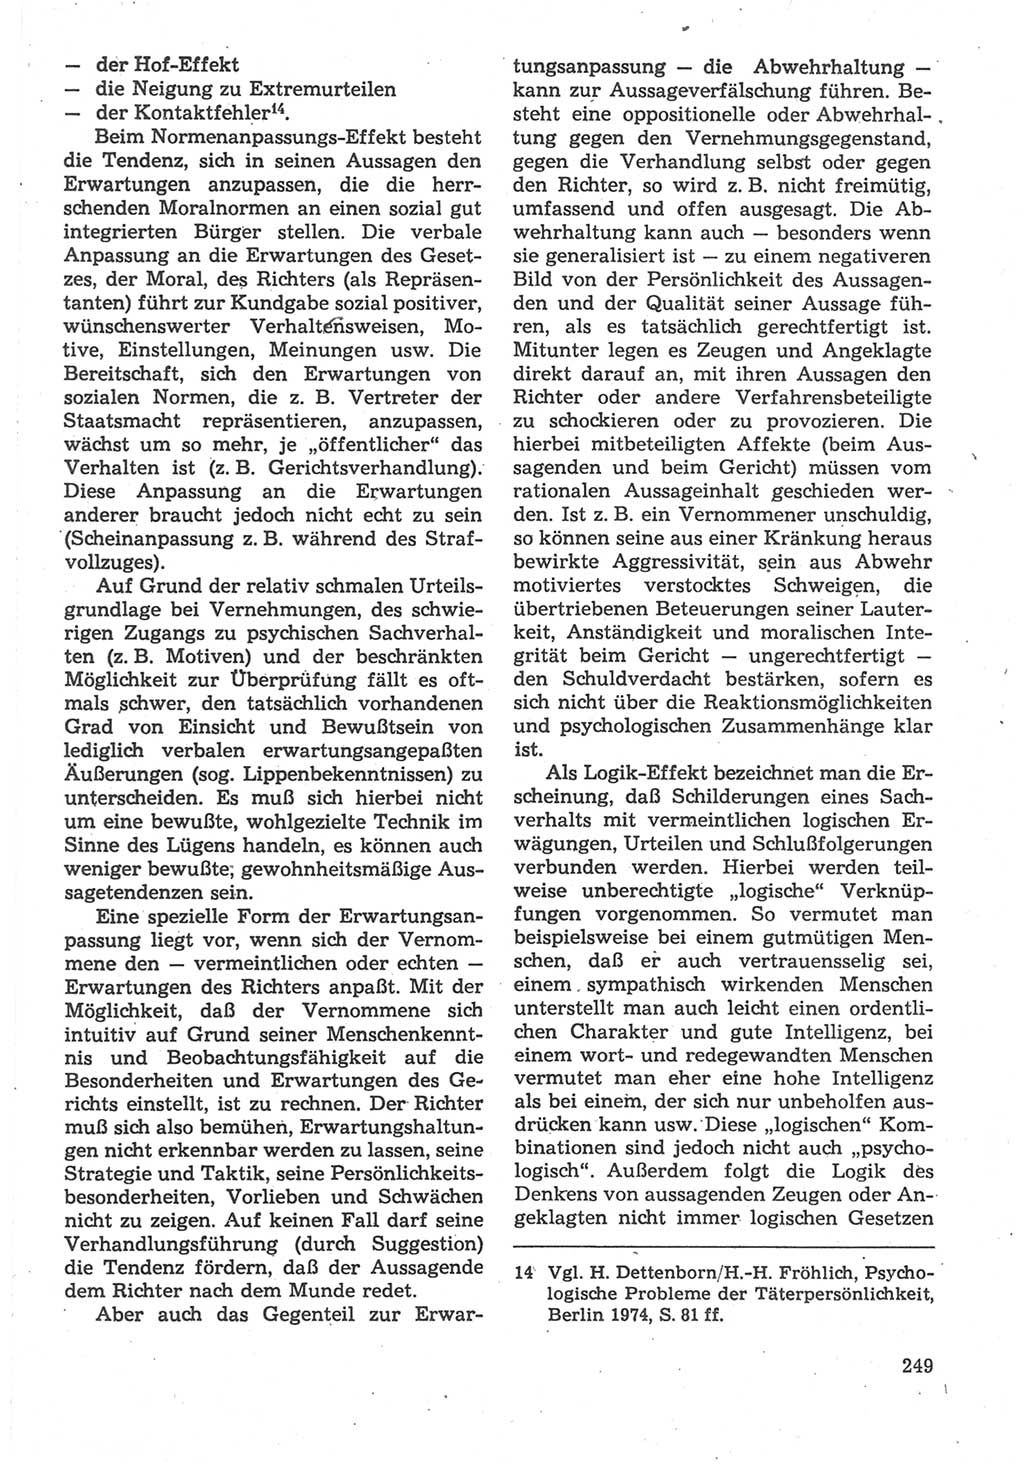 Strafverfahrensrecht [Deutsche Demokratische Republik (DDR)], Lehrbuch 1987, Seite 249 (Strafverf.-R. DDR Lb. 1987, S. 249)